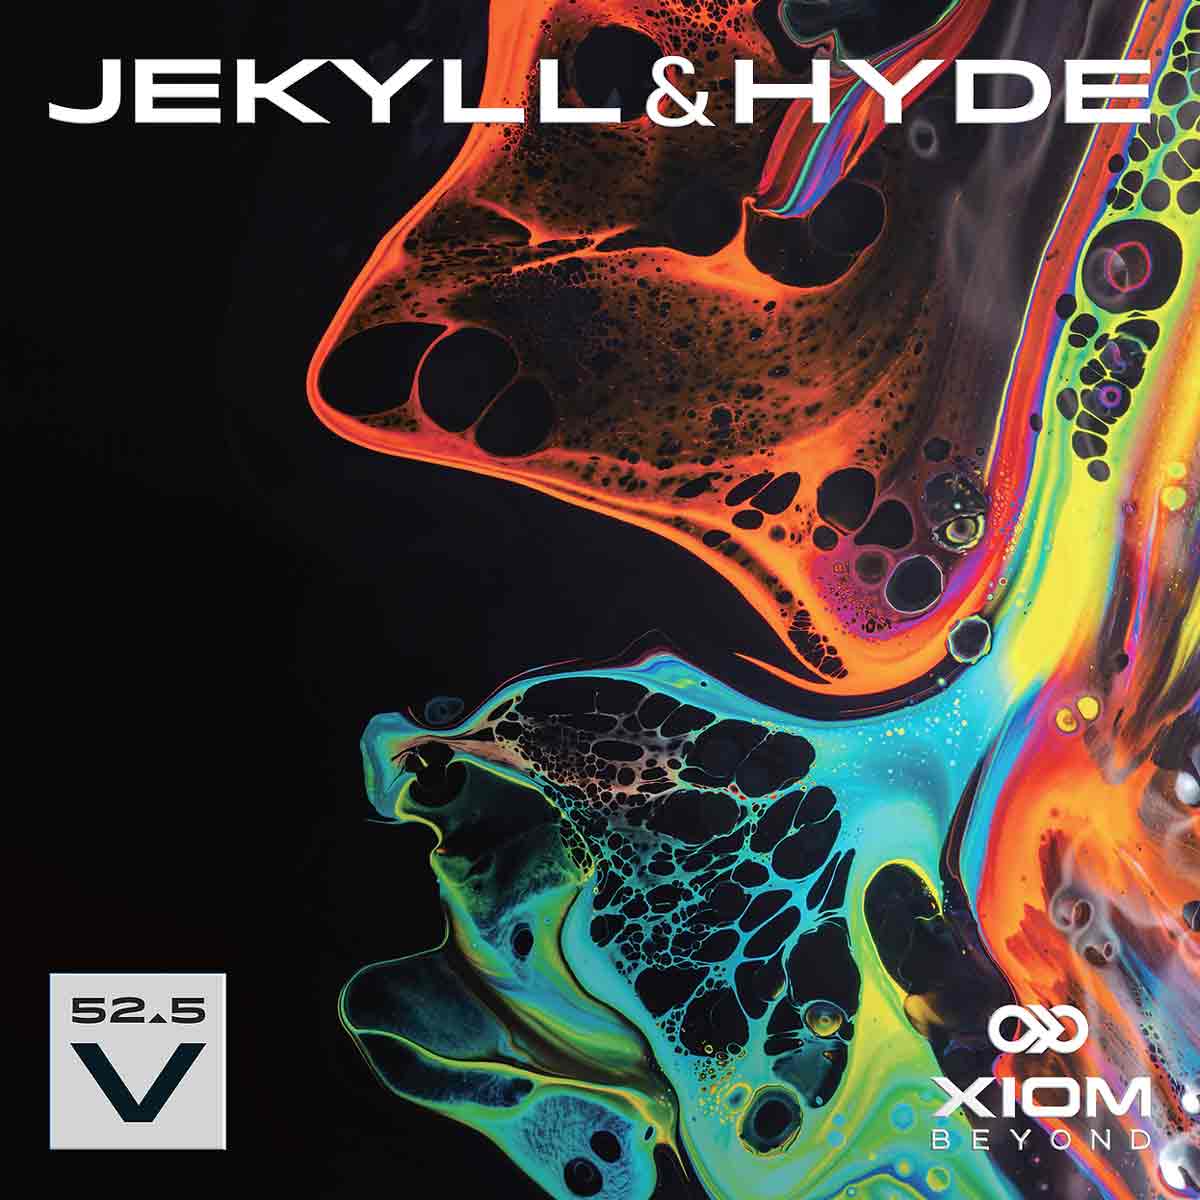 Xiom Belag Jekyll & Hyde V52.5 schwarz 2,1 mm